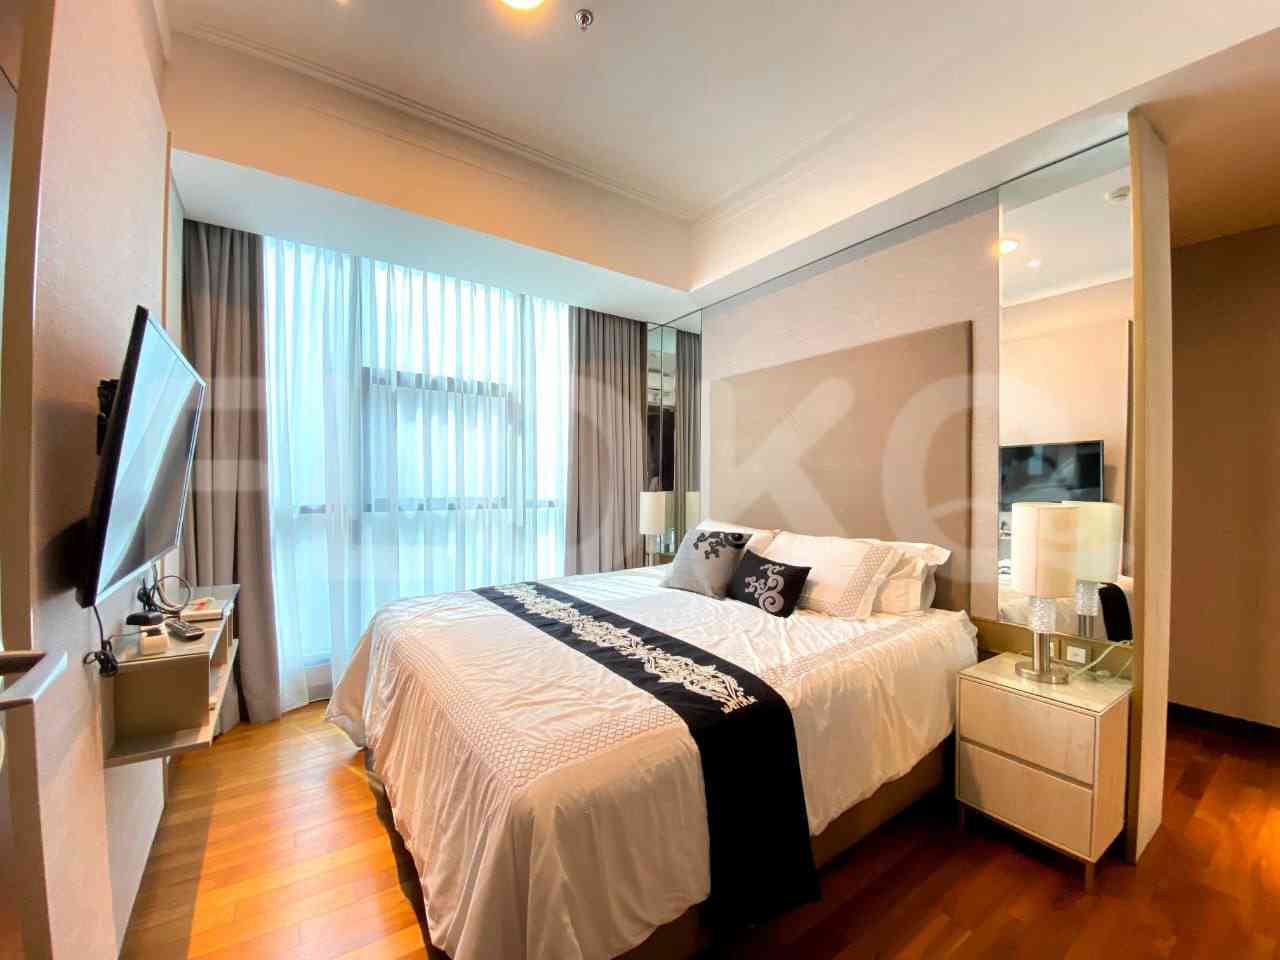 3 Bedroom on 20th Floor for Rent in Casa Grande - fte785 1